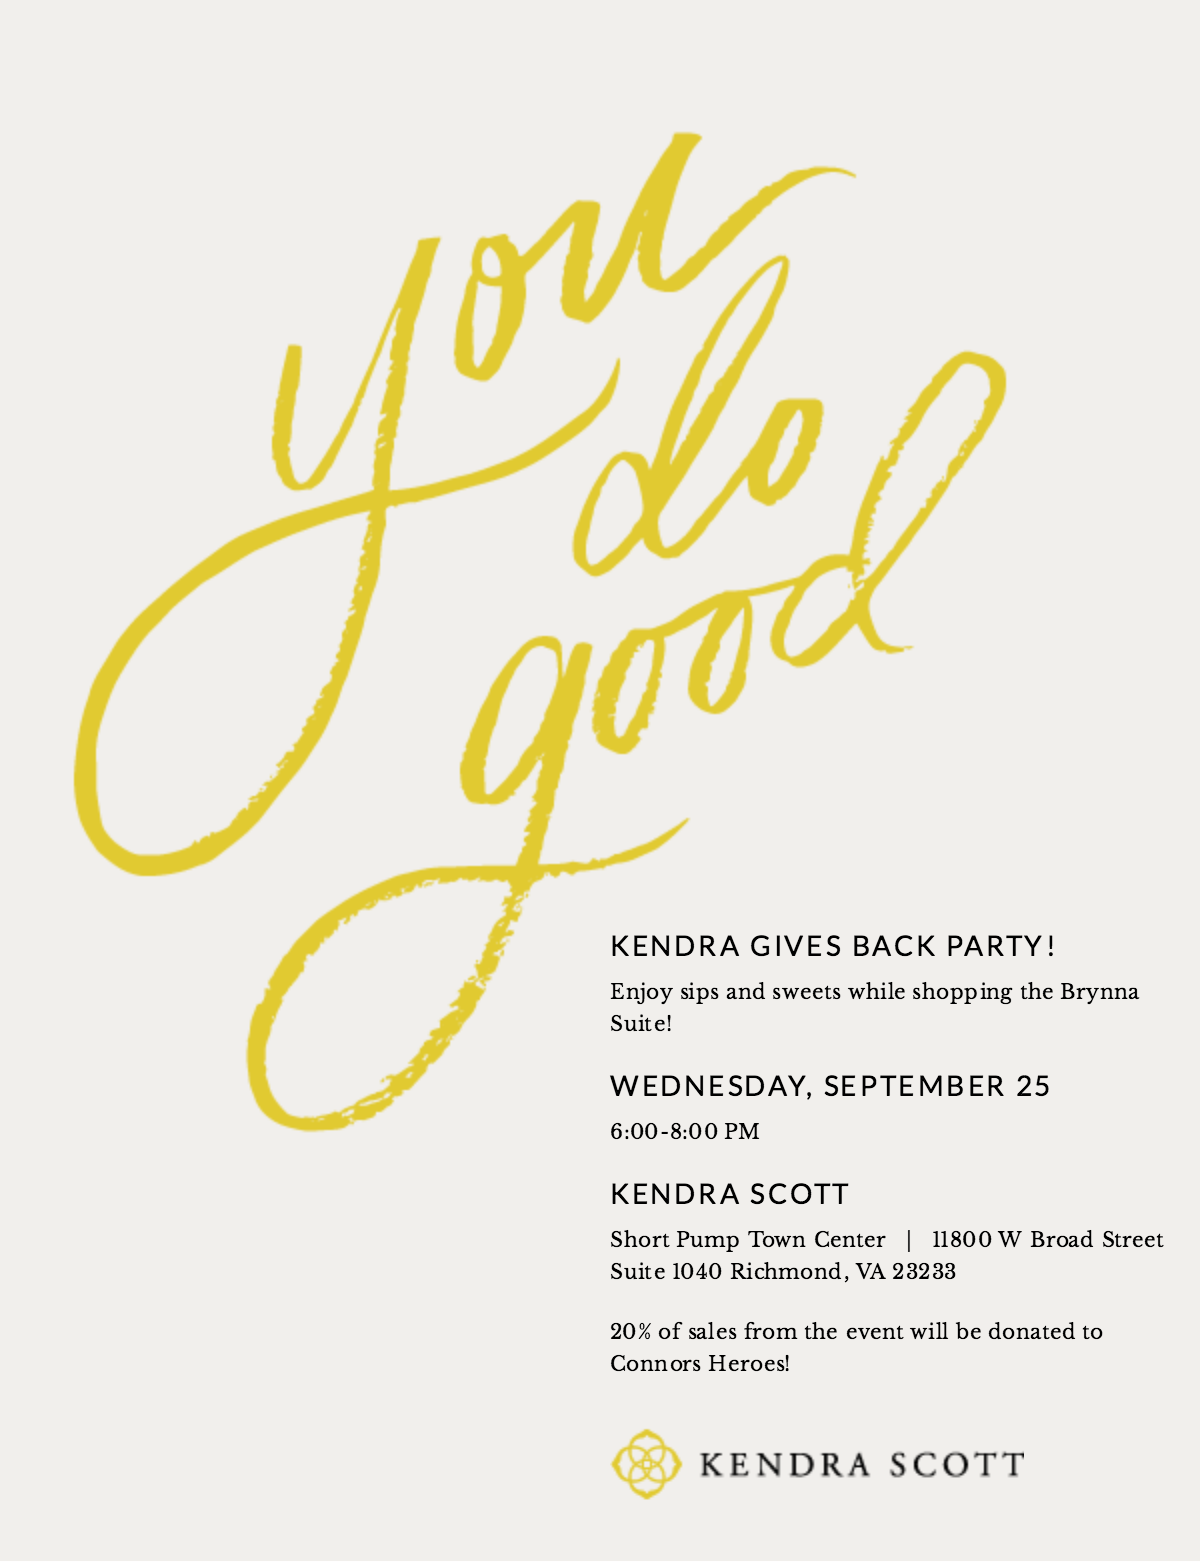 Kendra Scott in Short Pump will hold a fundraising night on Sept 25